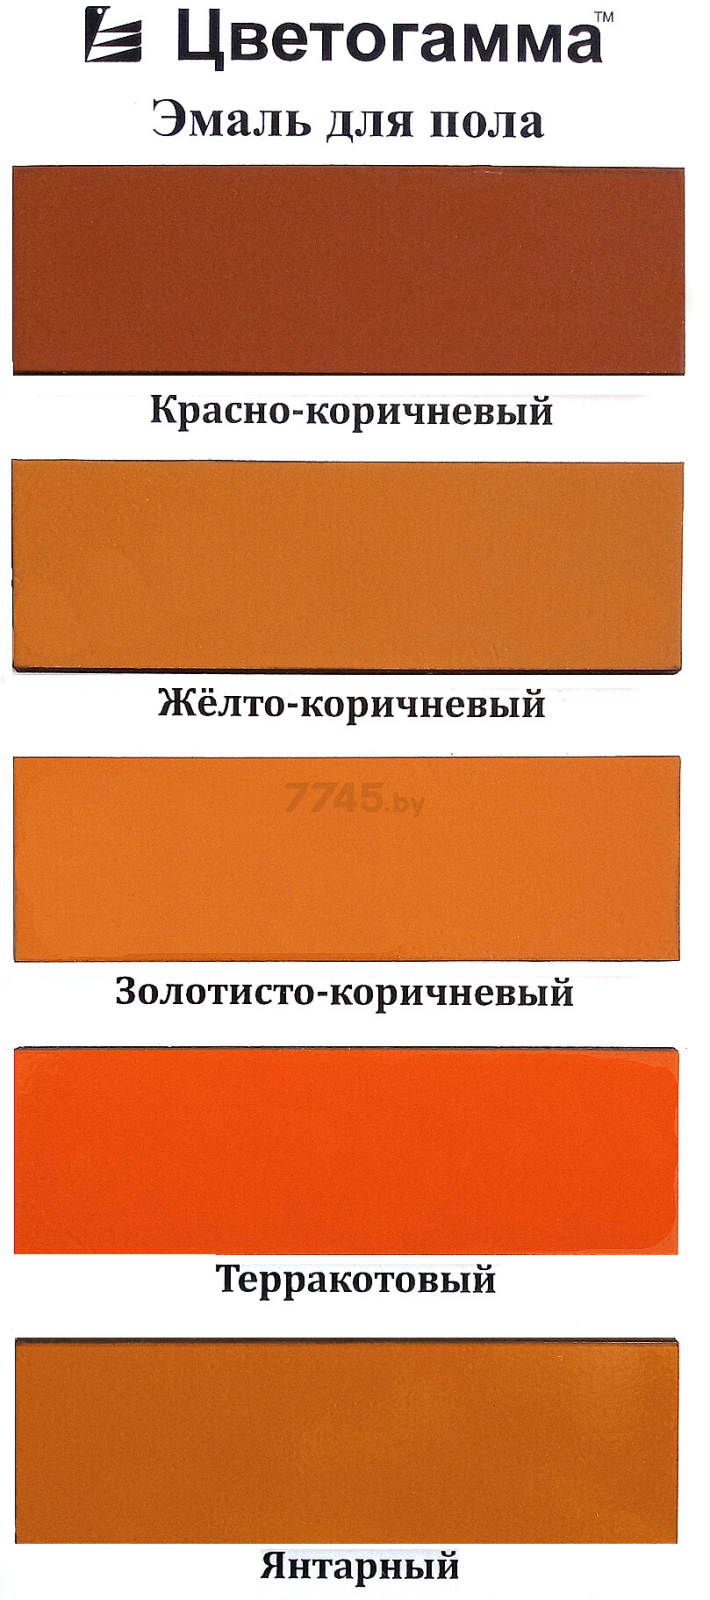 Эмаль пентафталевая ЦВЕТОГАММА ПФ-266 для пола красно-коричневая 1,8 кг - Фото 2